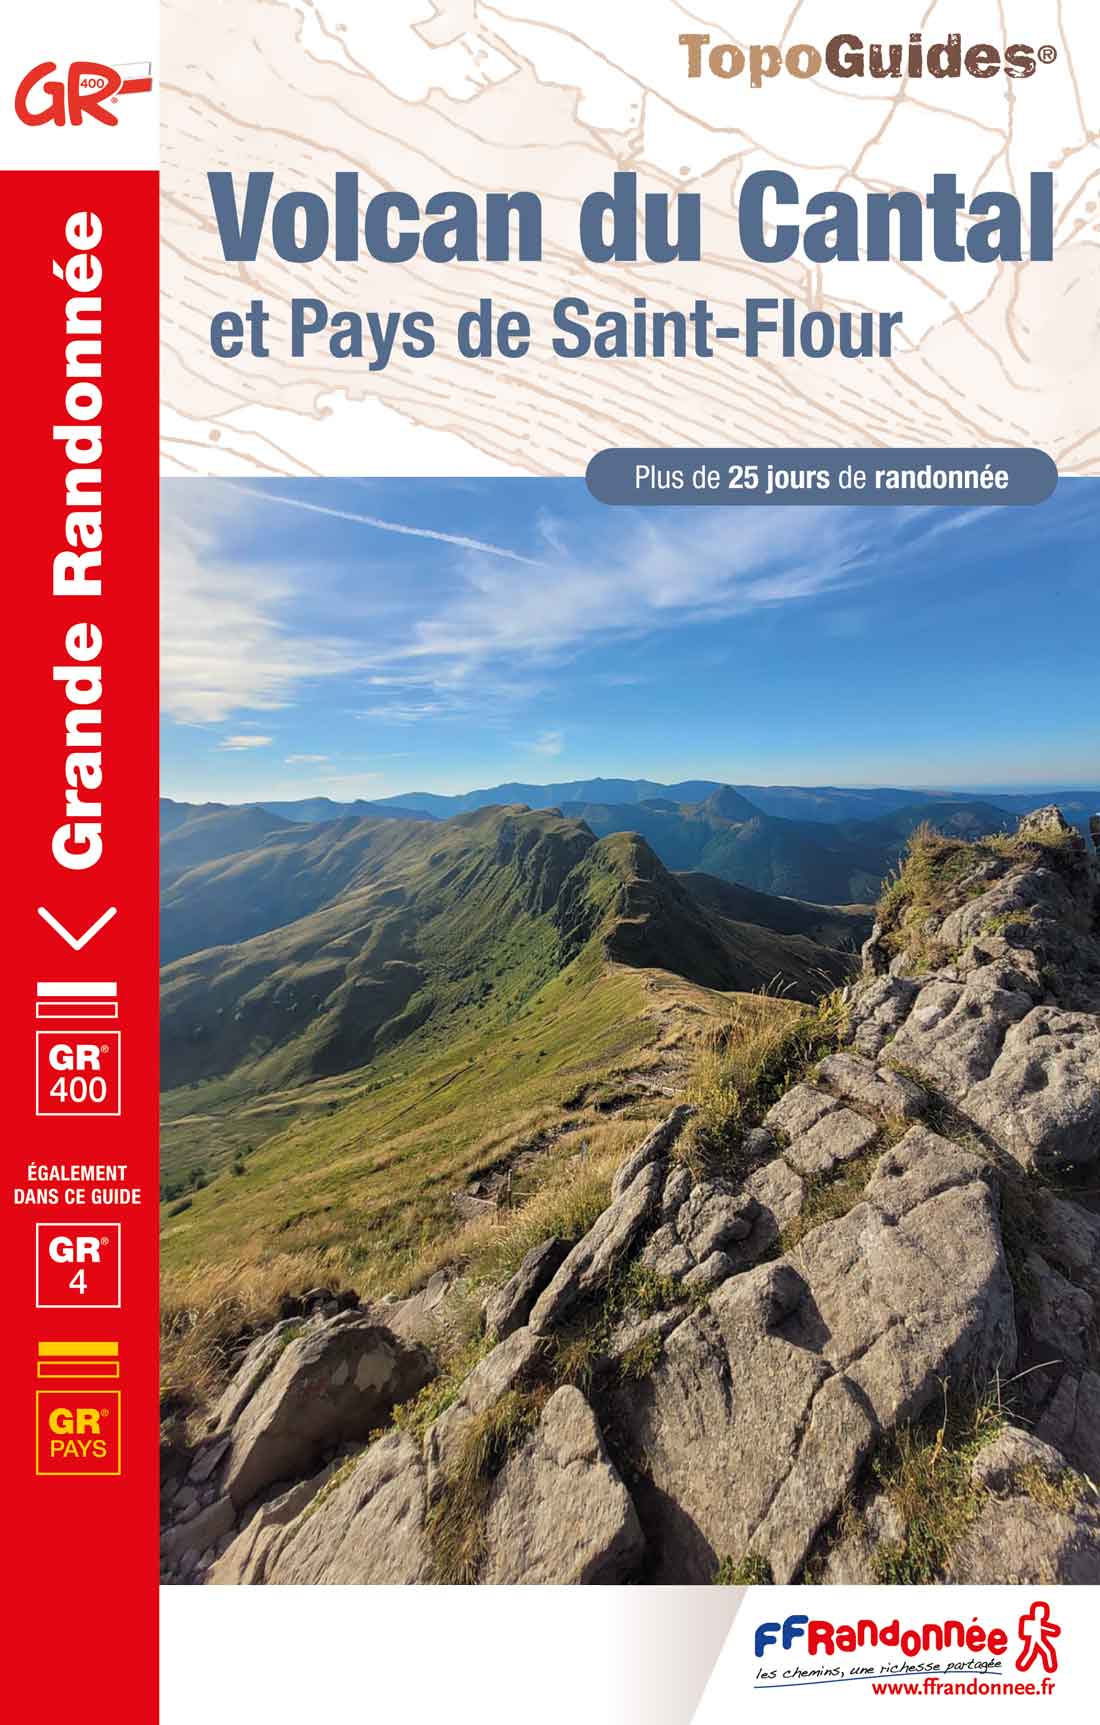 Topoguide FFRandonnée - GR 400 - Volcan du Cantal et Pays de Saint-Flour